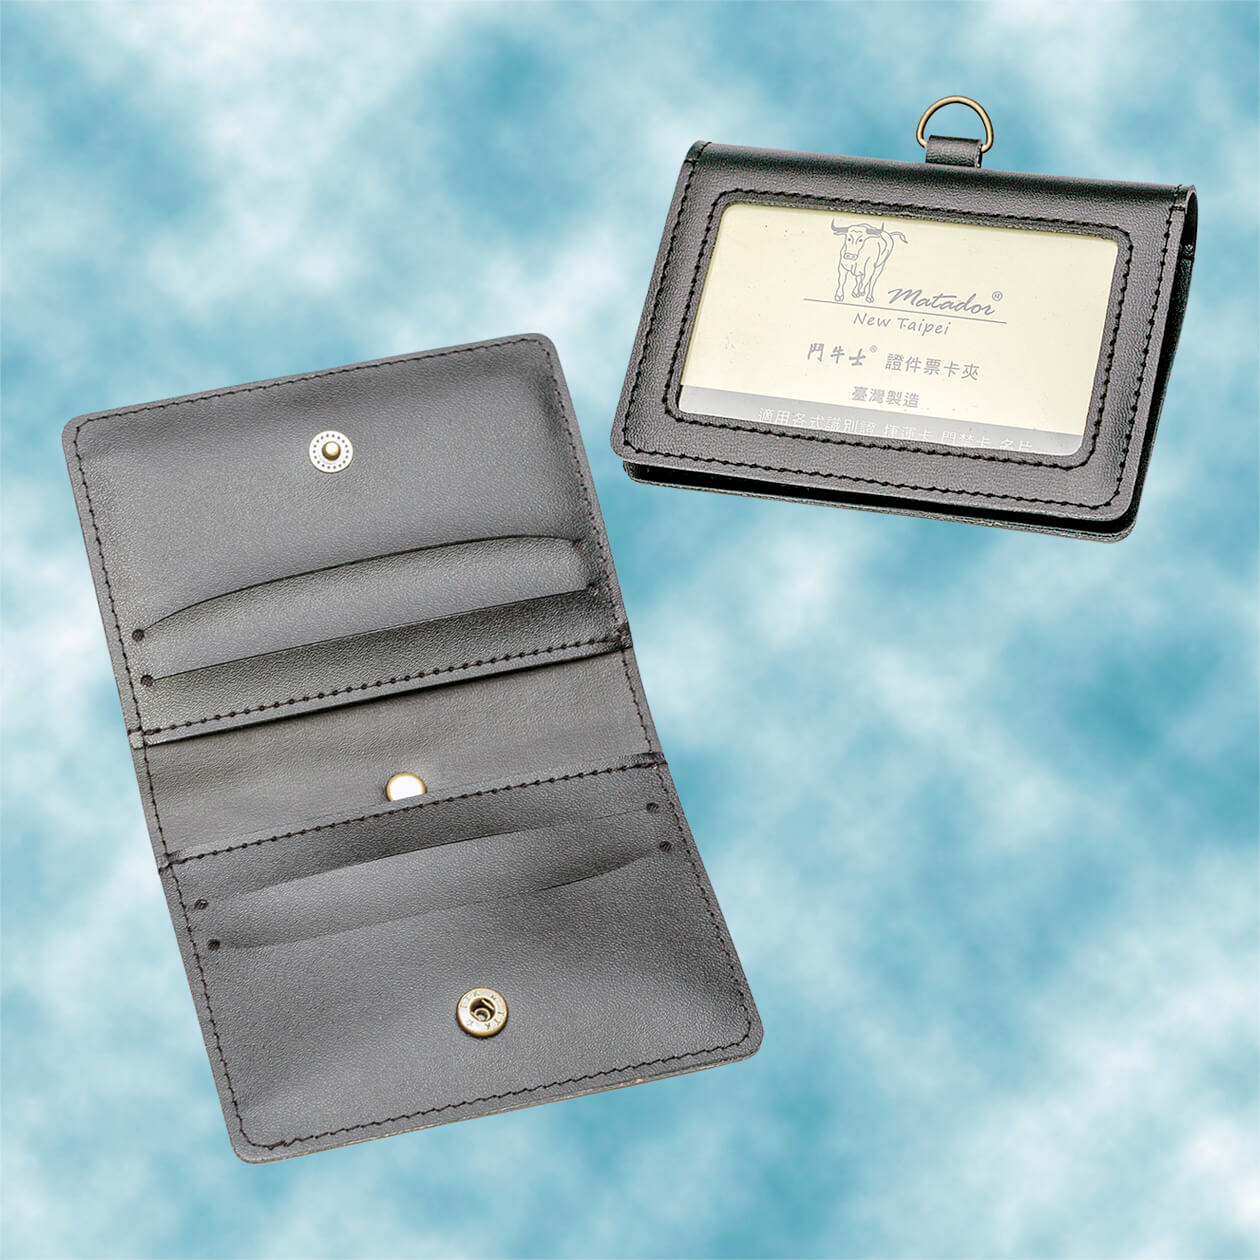 合成皮皮夾式識別證套 摺疊式證件套 對折式票卡套6081p 黑色 棕色 禮品客